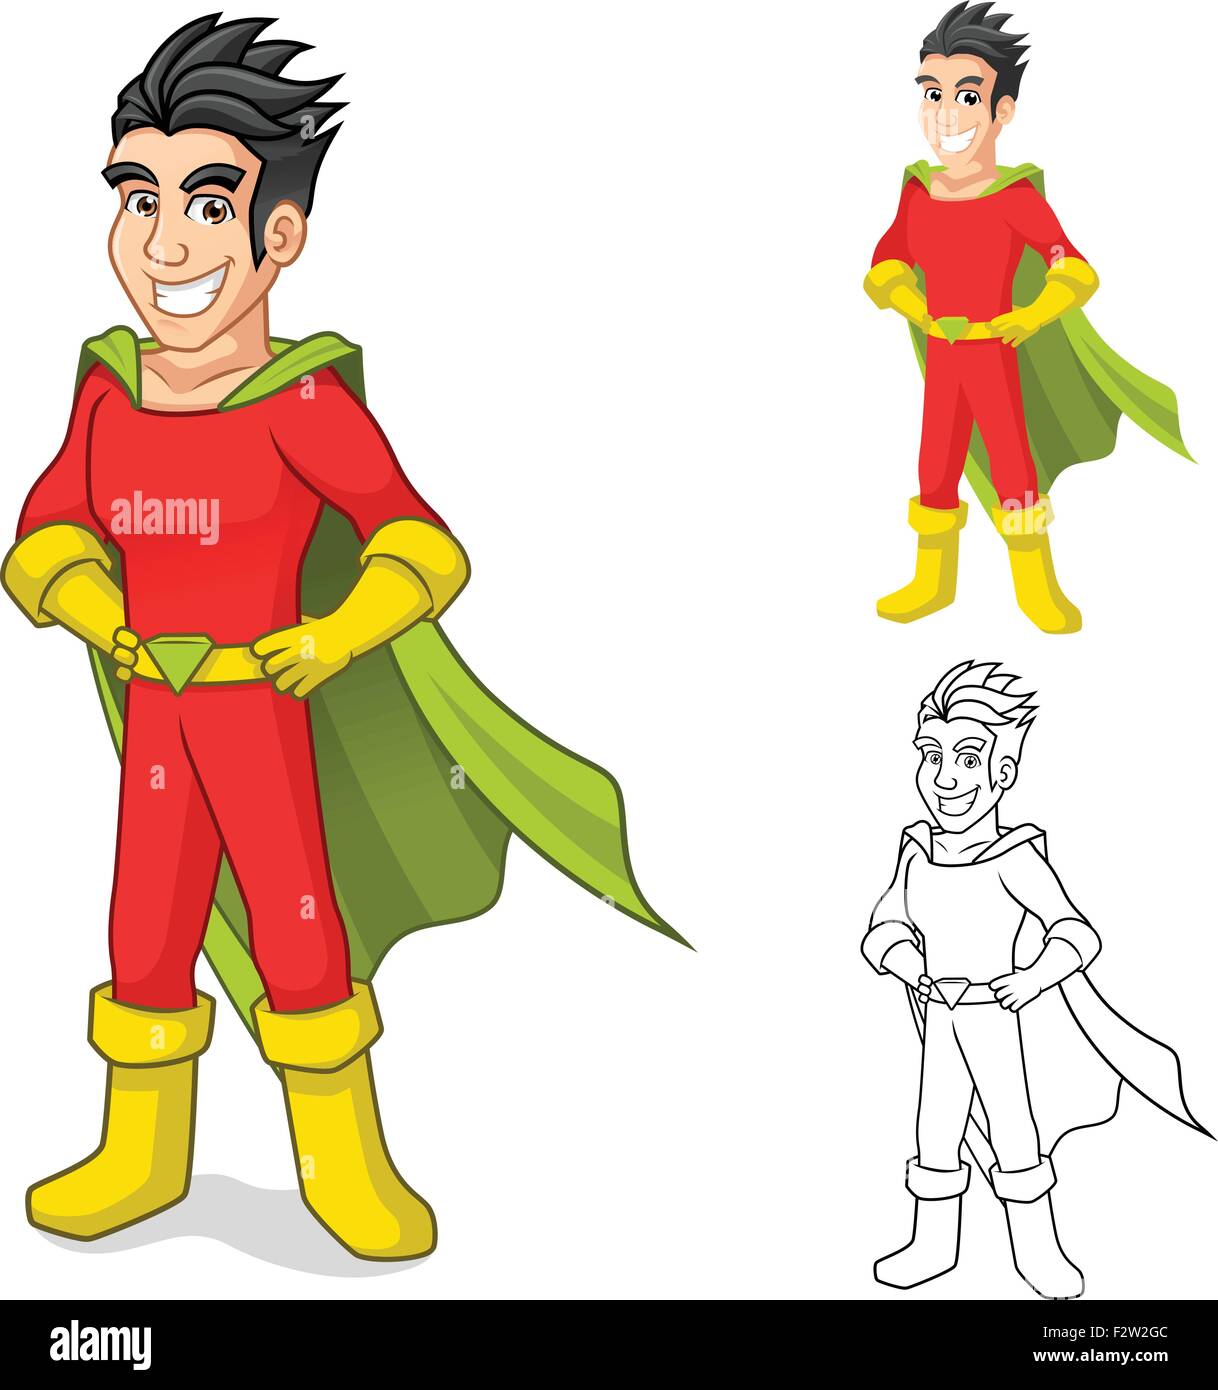 Coole Superhelden Comic Figur Mit Umhang Und Stehende Pose Stock Vektorgrafik Alamy